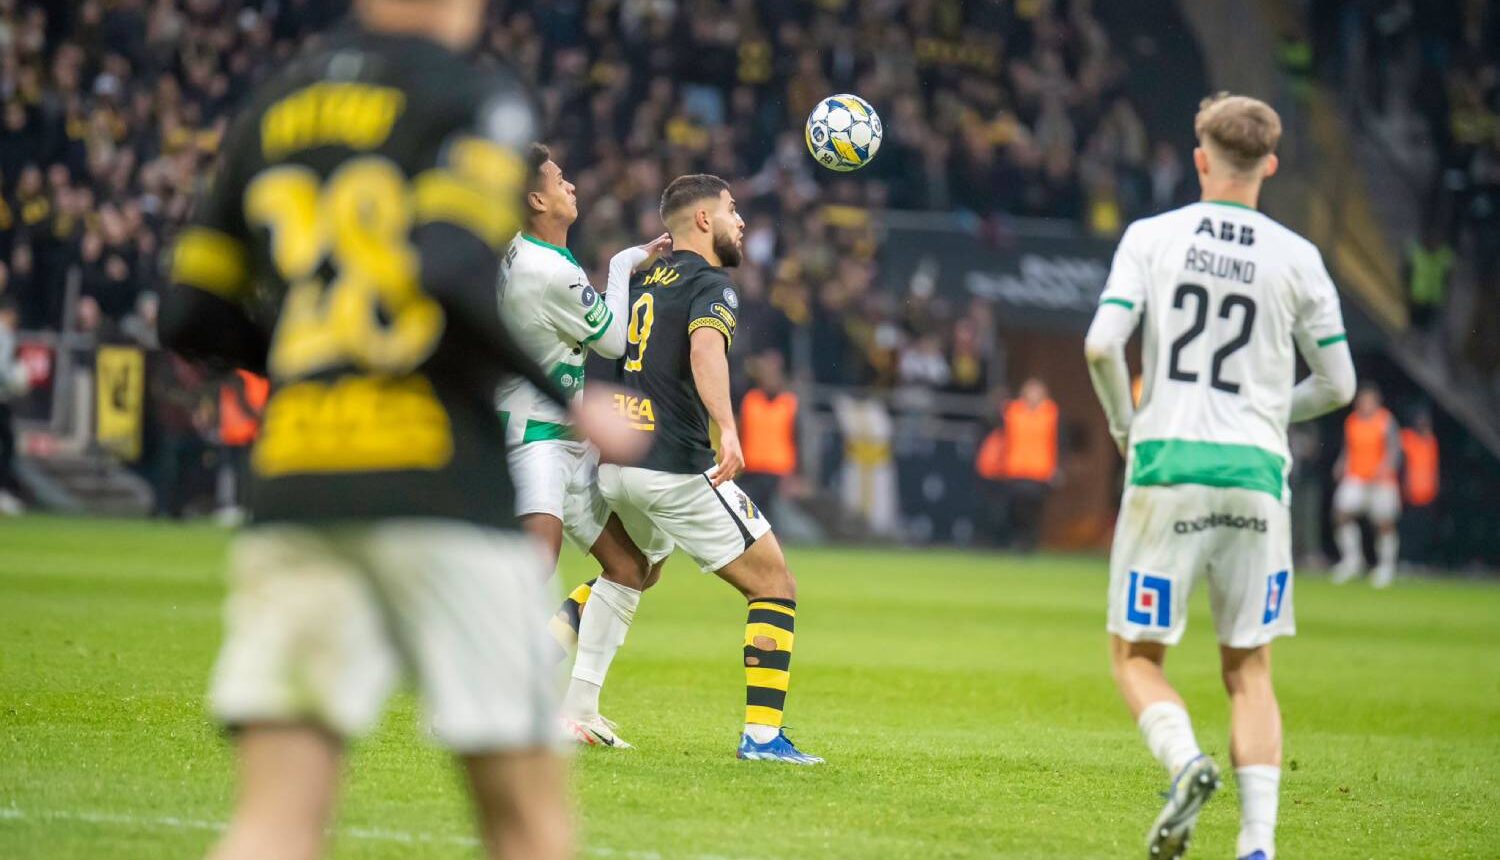 Omar Faraj i duell med en spelare under matchen mot Västerås SK